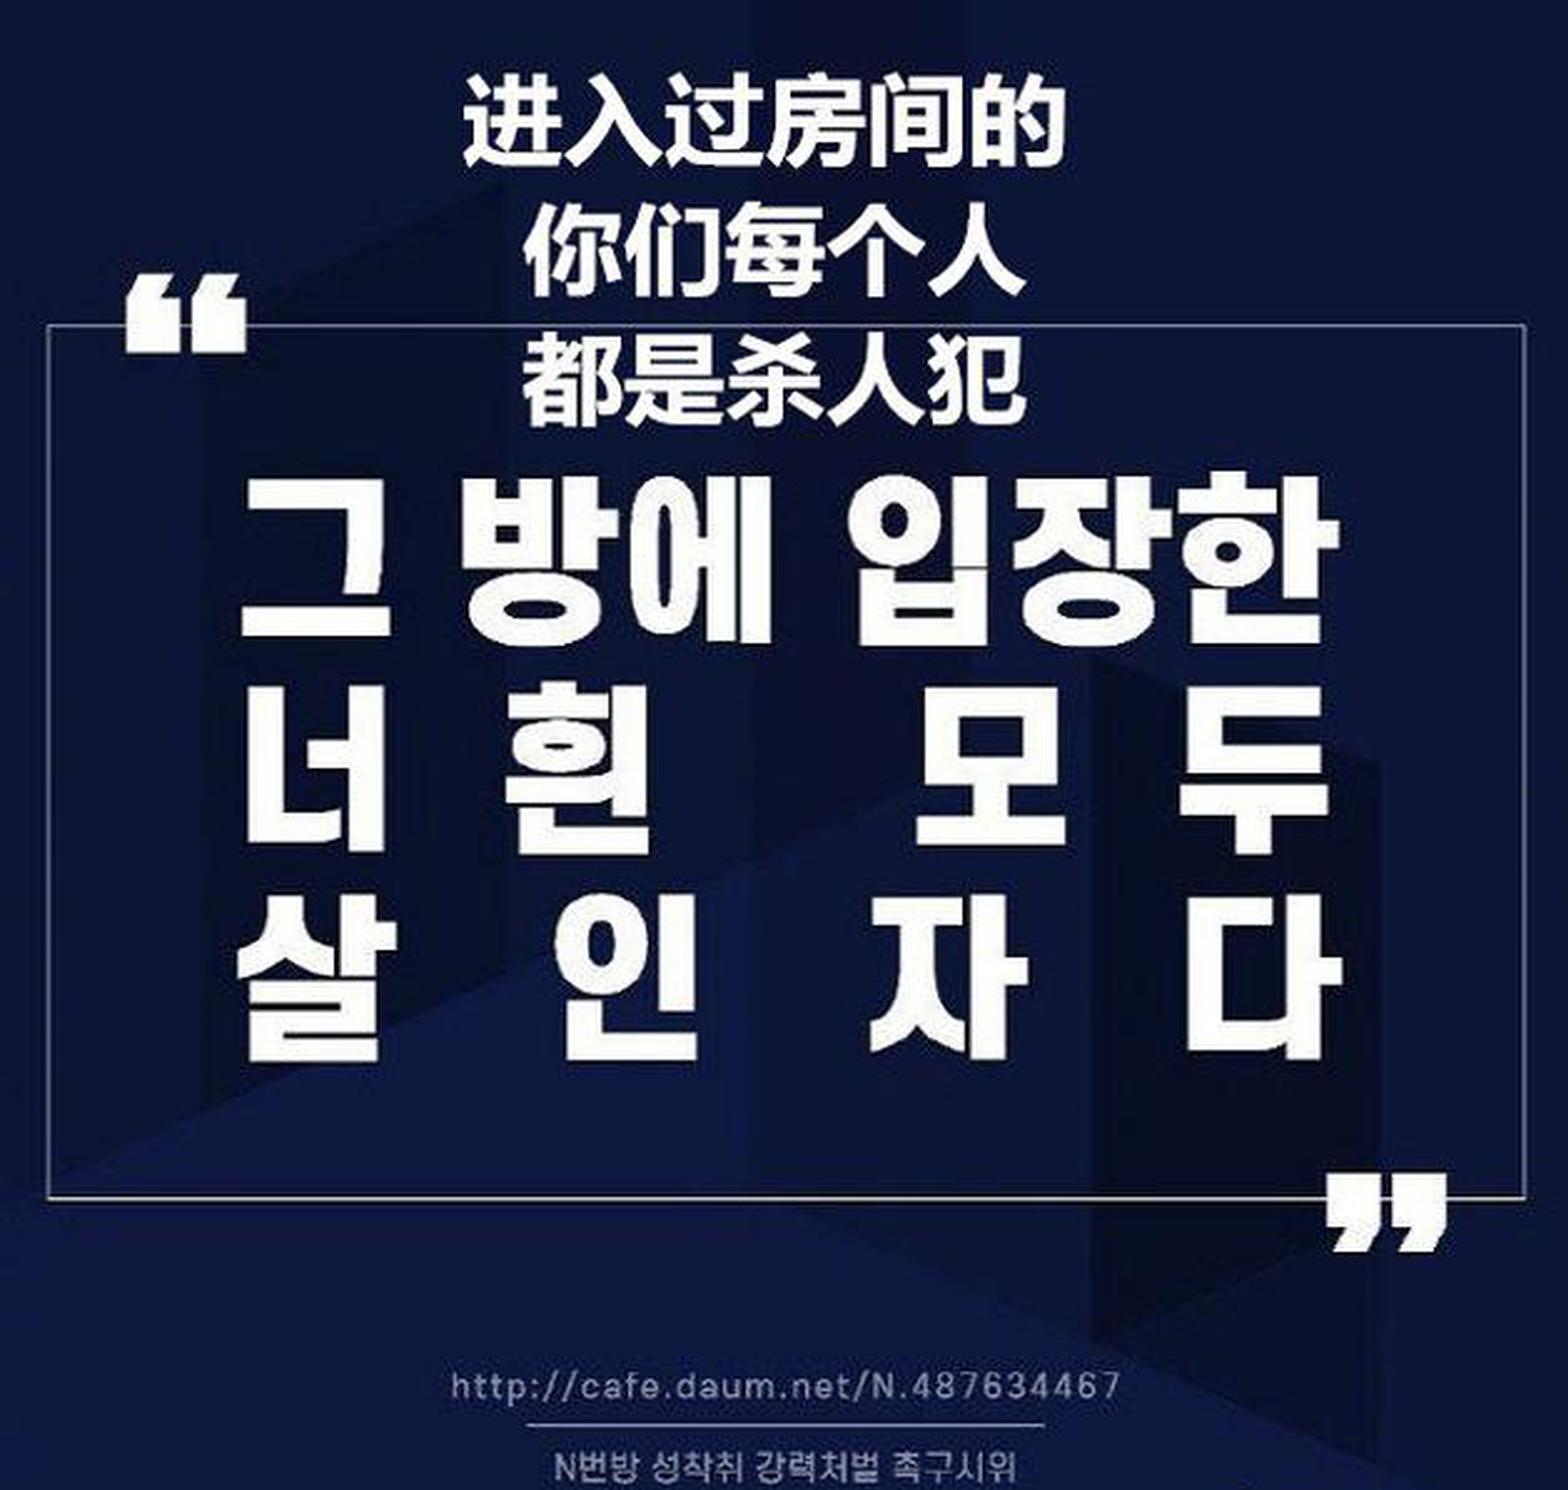 韩国n号房案件引发关注 李惠利等艺人请愿公开涉案人员资料